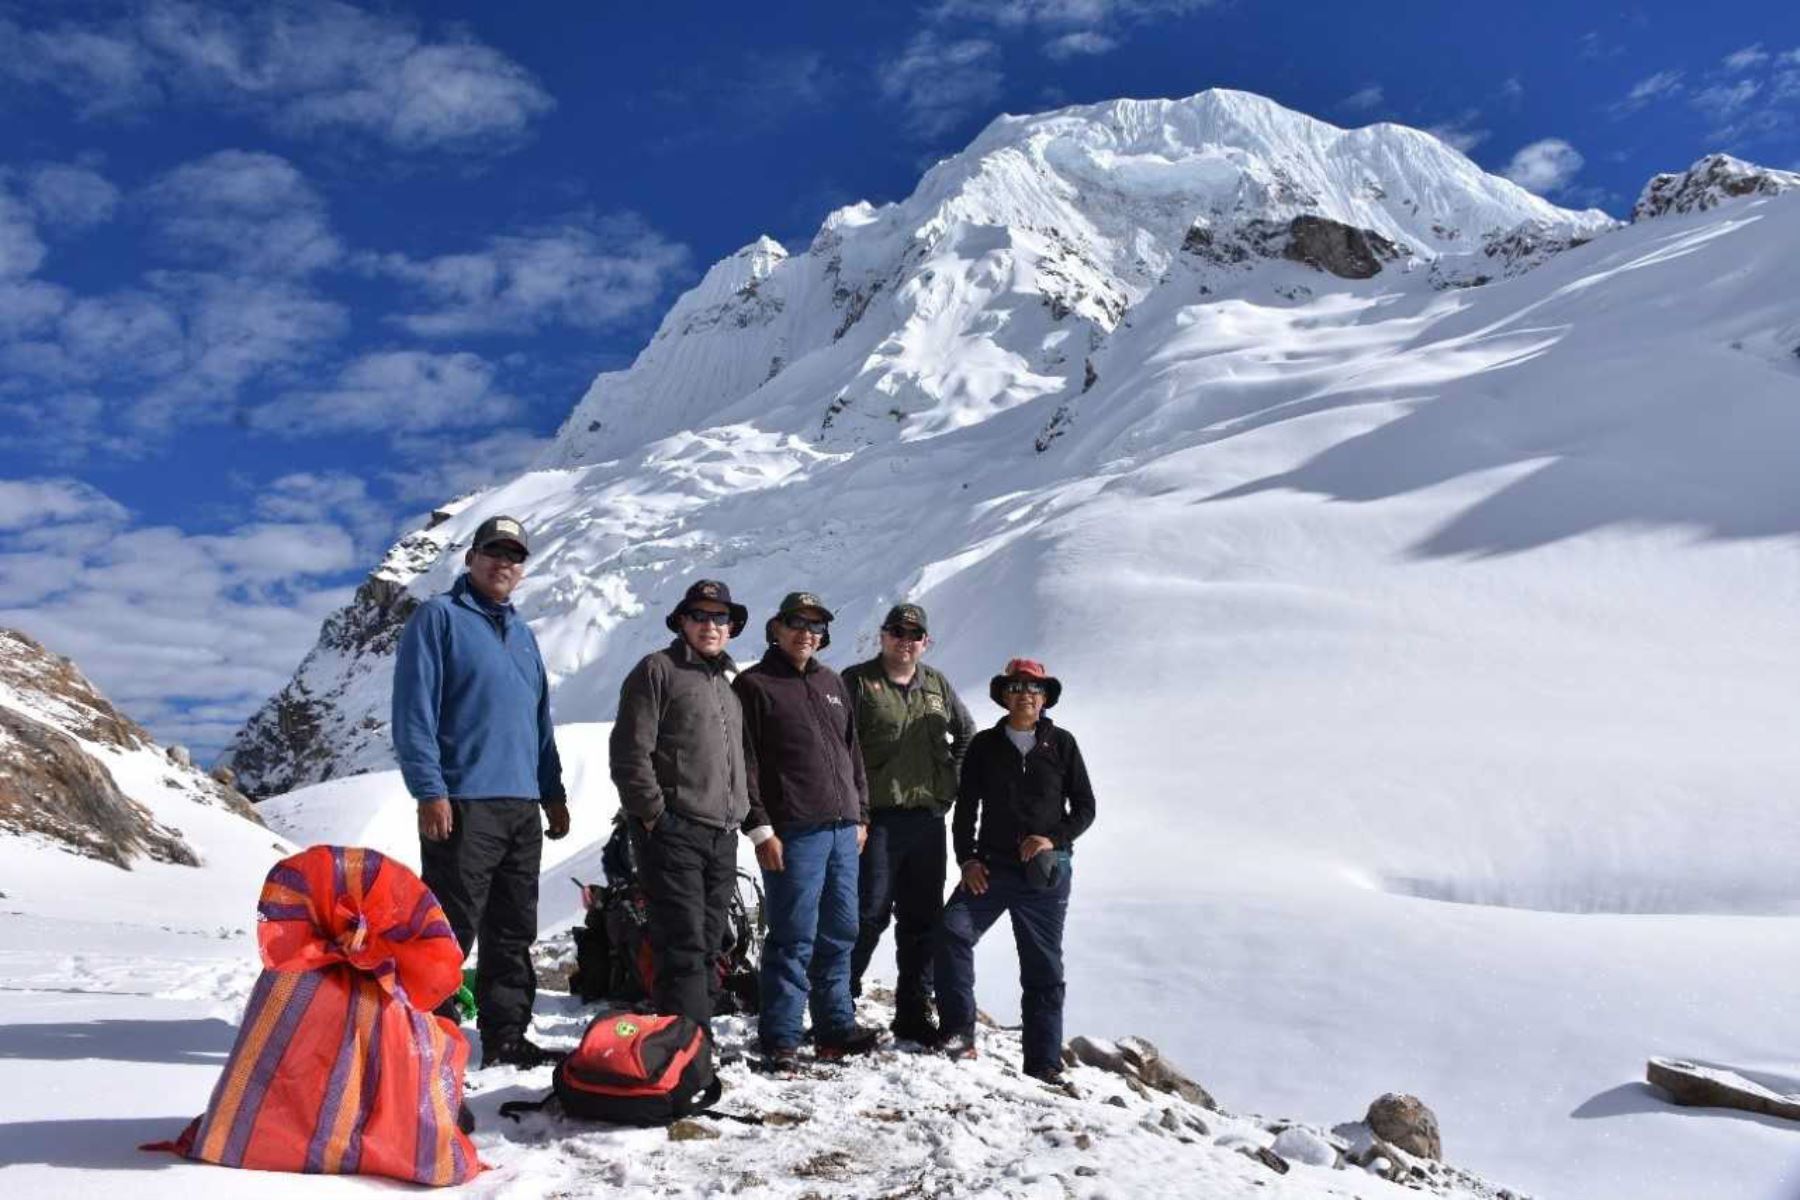 El Servicio Nacional de Áreas Naturales Protegidas por el Estado (Sernanp) y el Instituto Nacional de Glaciares y Ecosistemas de Montaña (Inaigem), organismos adscritos al Ministerio del Ambiente, realizaron el primer monitoreo conjunto del Incachiriasca, uno de los 12 glaciares del nevado Salkantay, ubicado en la región Cusco.